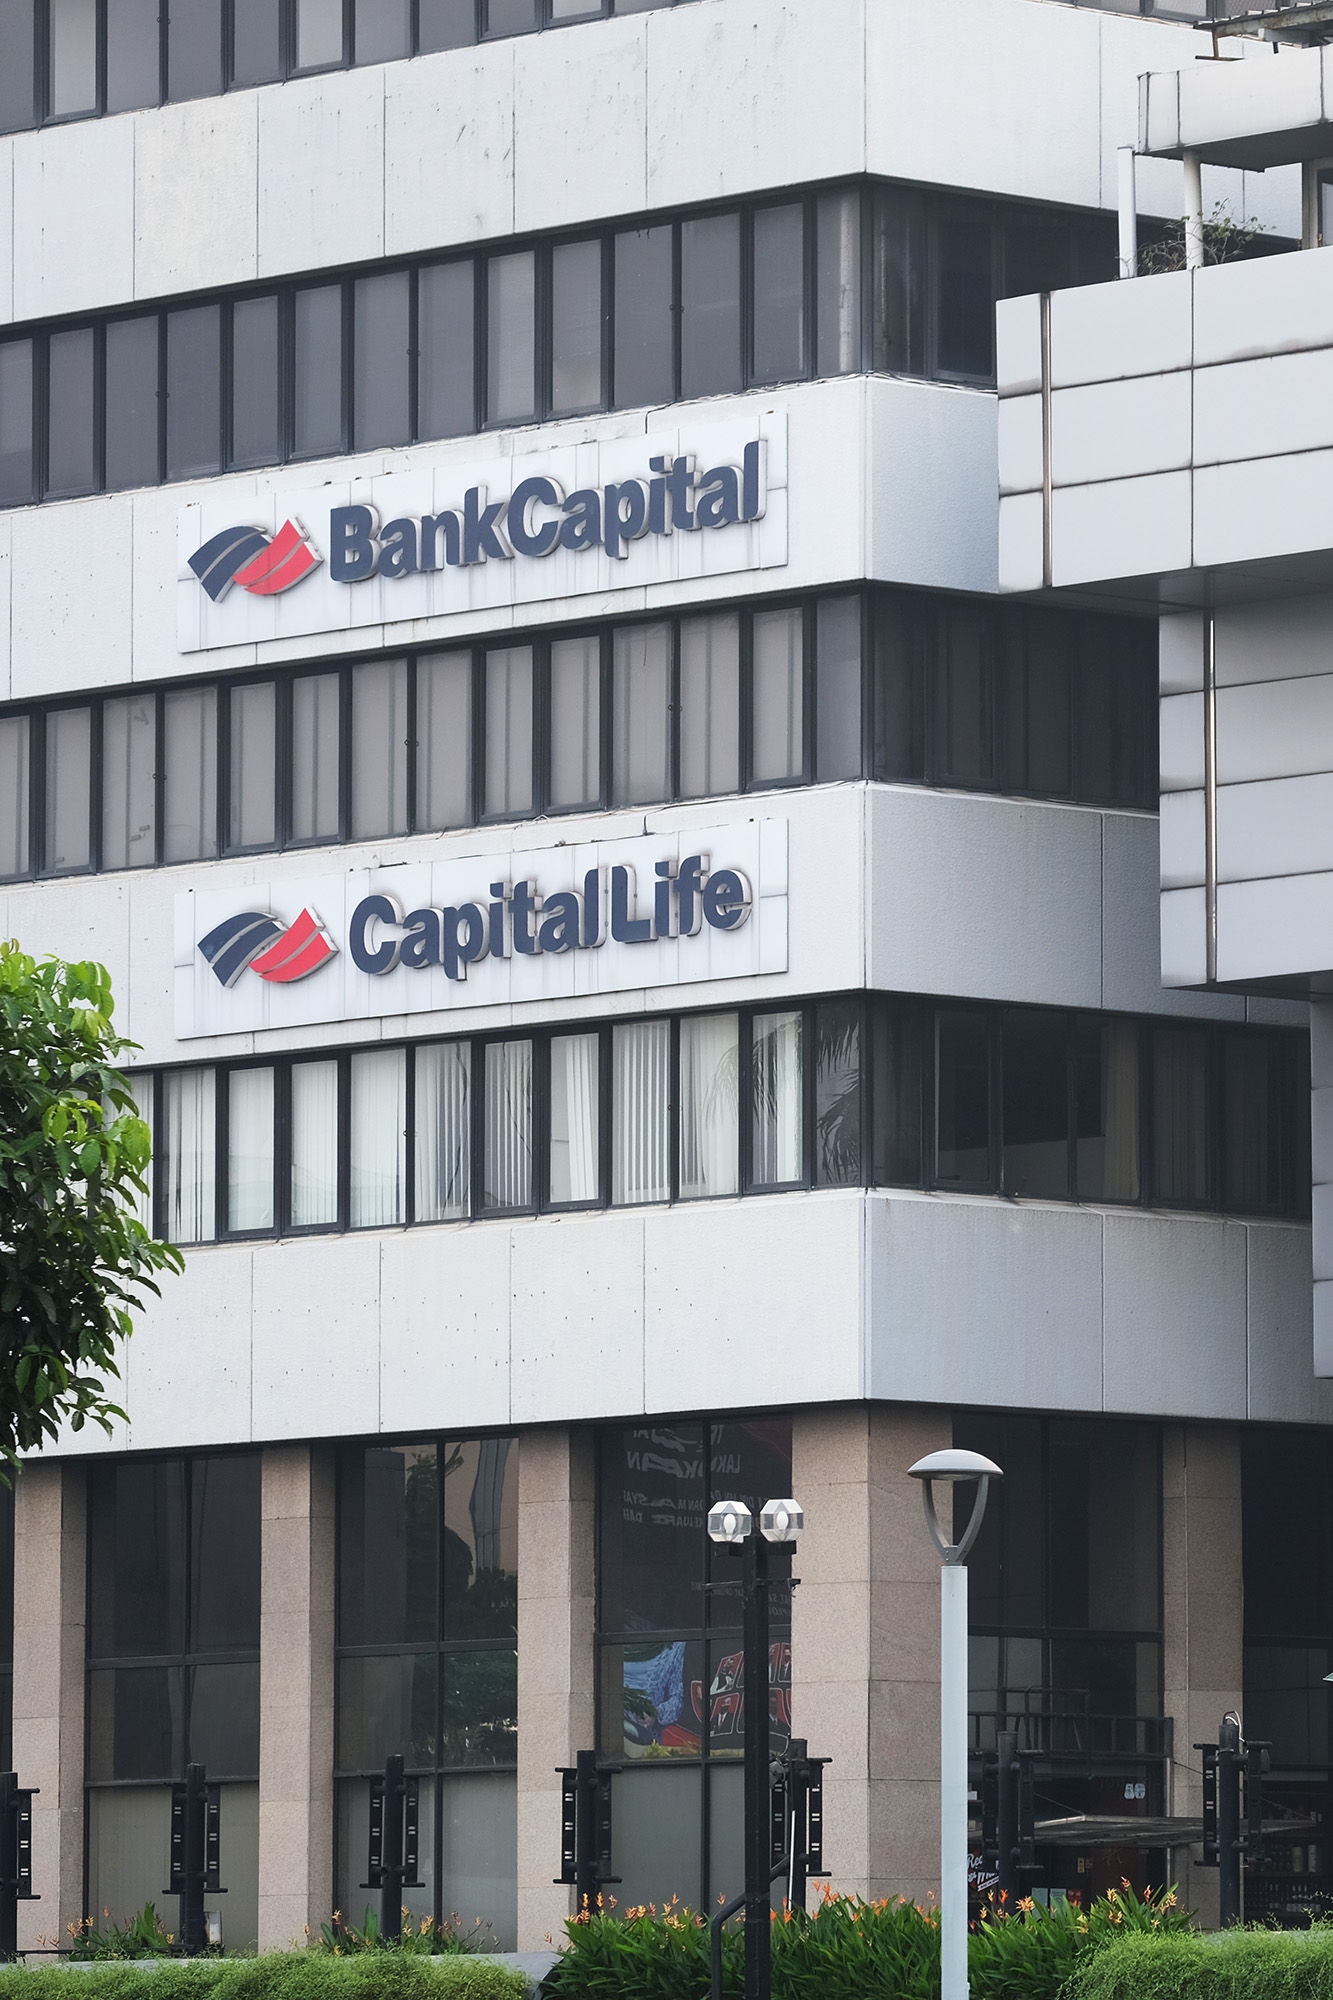 Kantor Bank Capital dan asuransi Capital Life di Jakarta. Foto: Ismail Pohan/TrenAsia